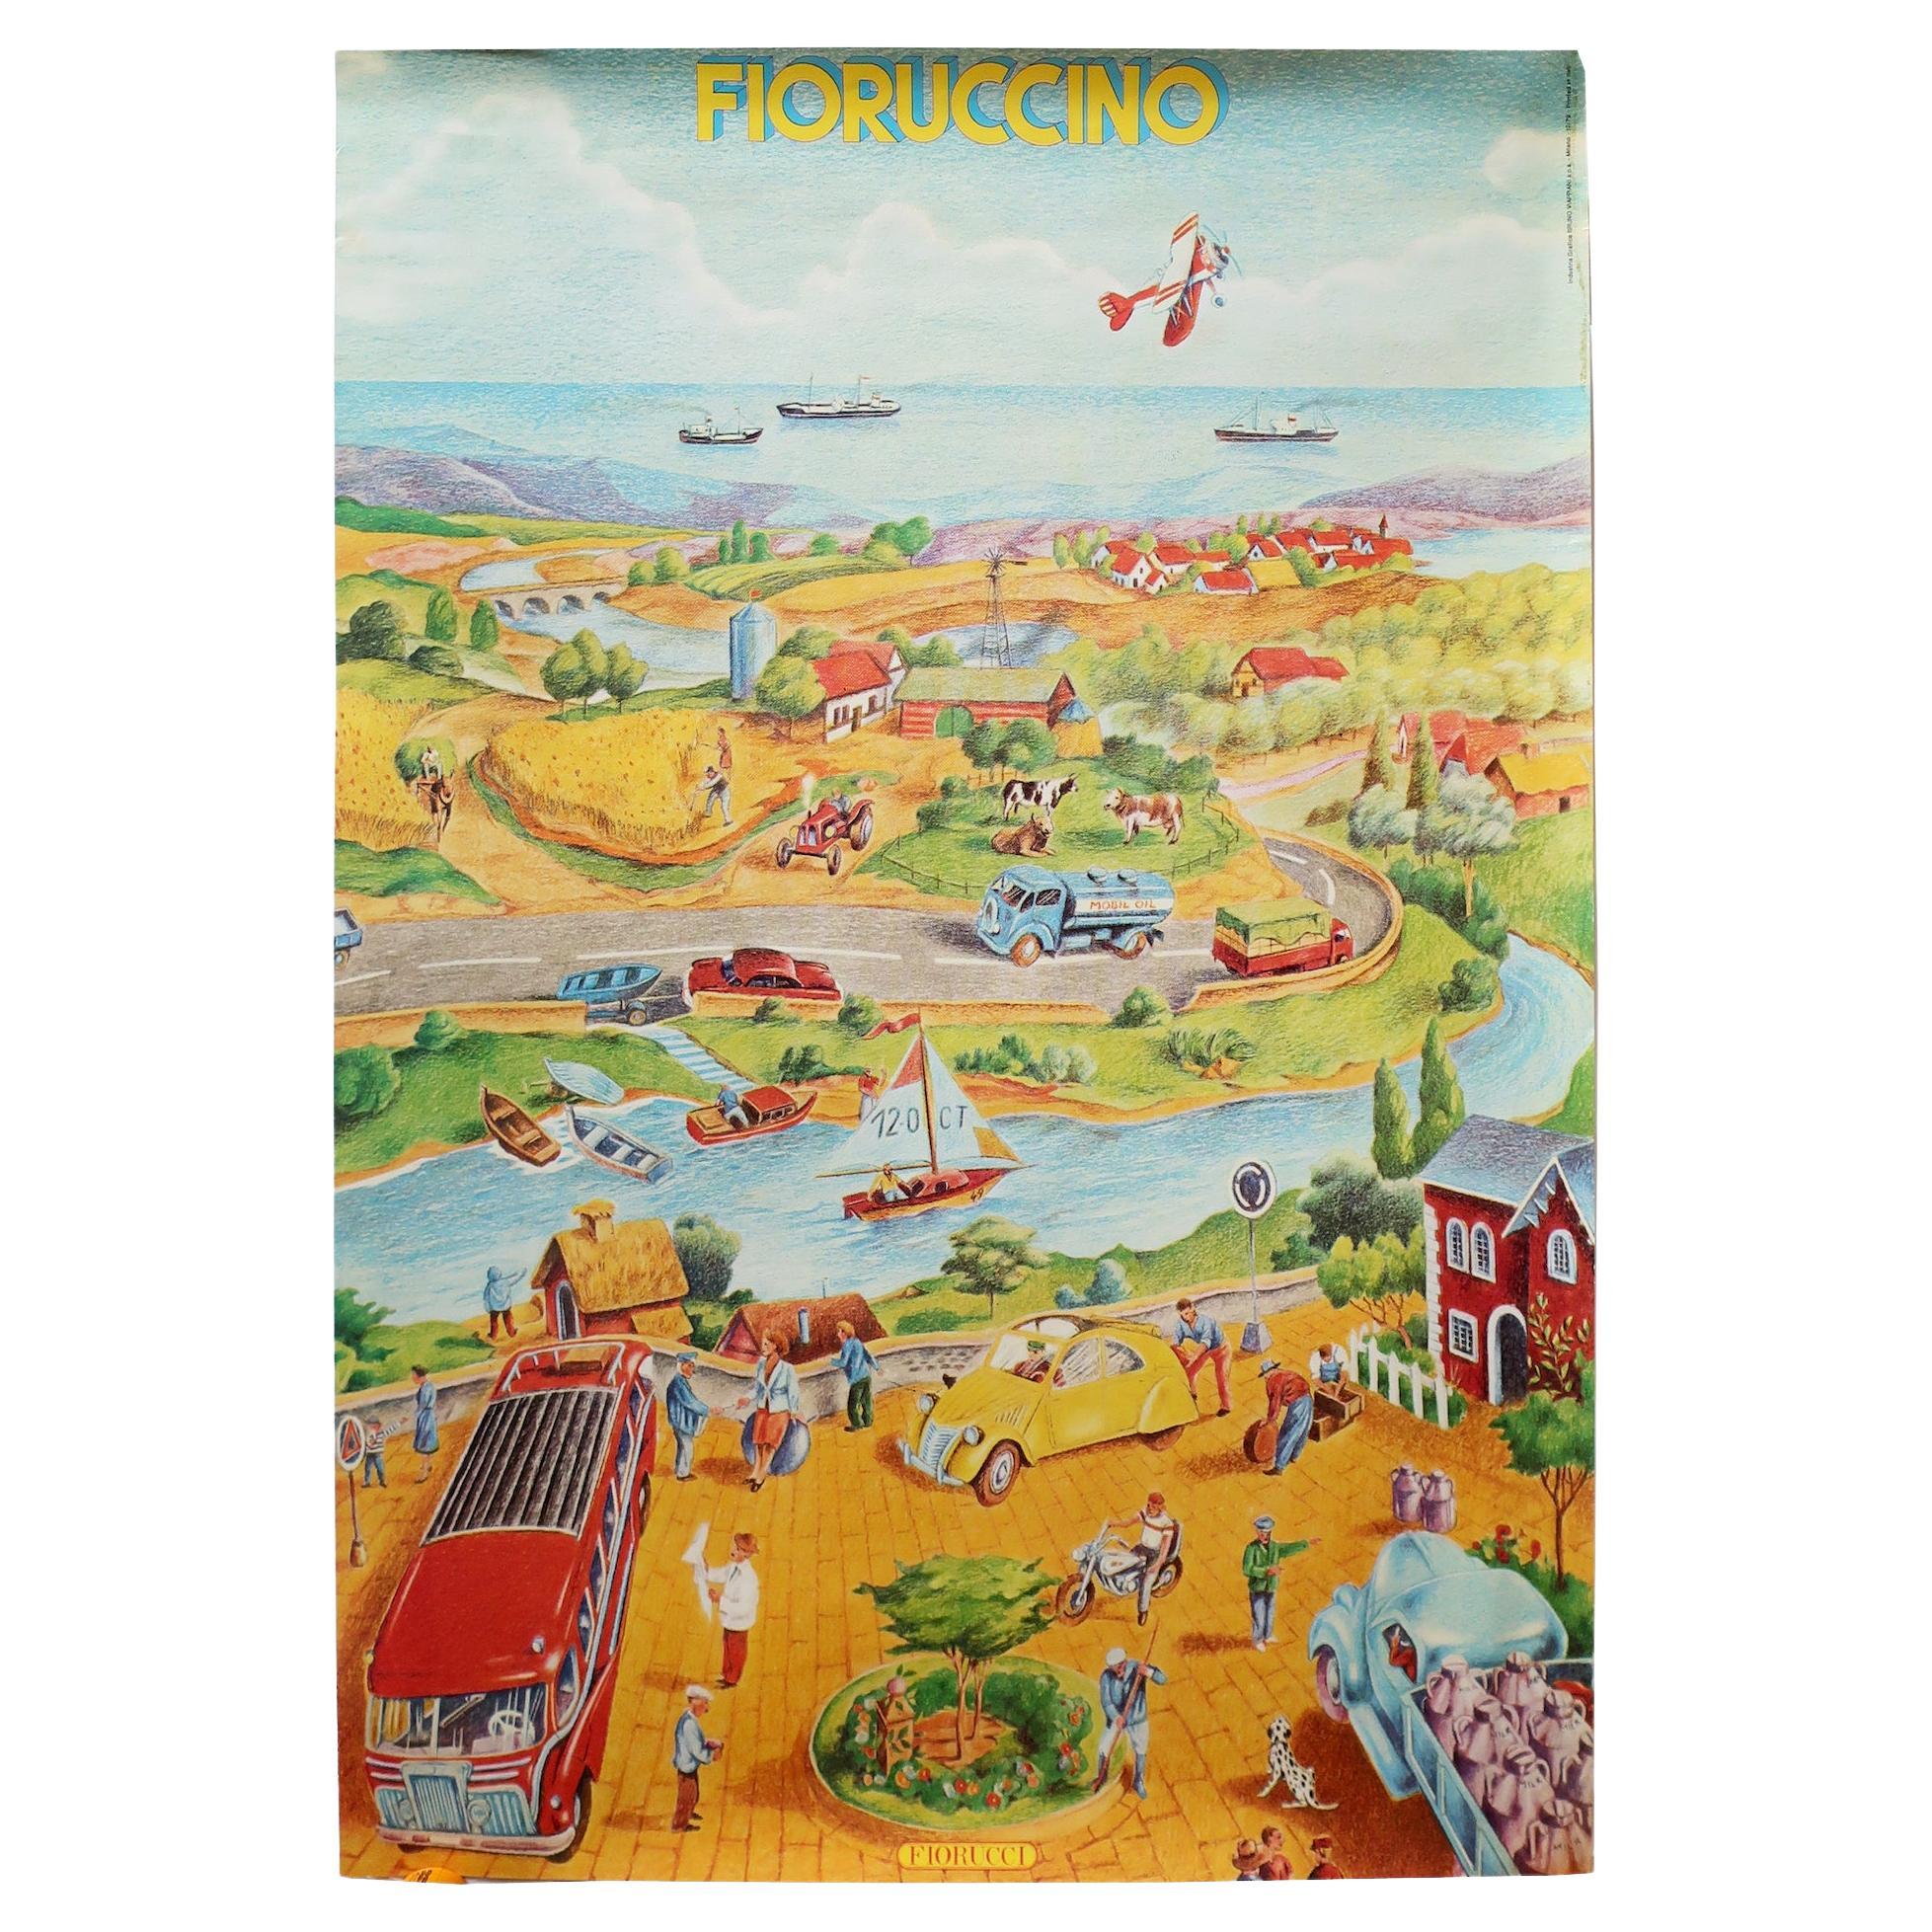 Vintage Fiorucci “Fioruccino” Illustrated Poster 1979 For Sale